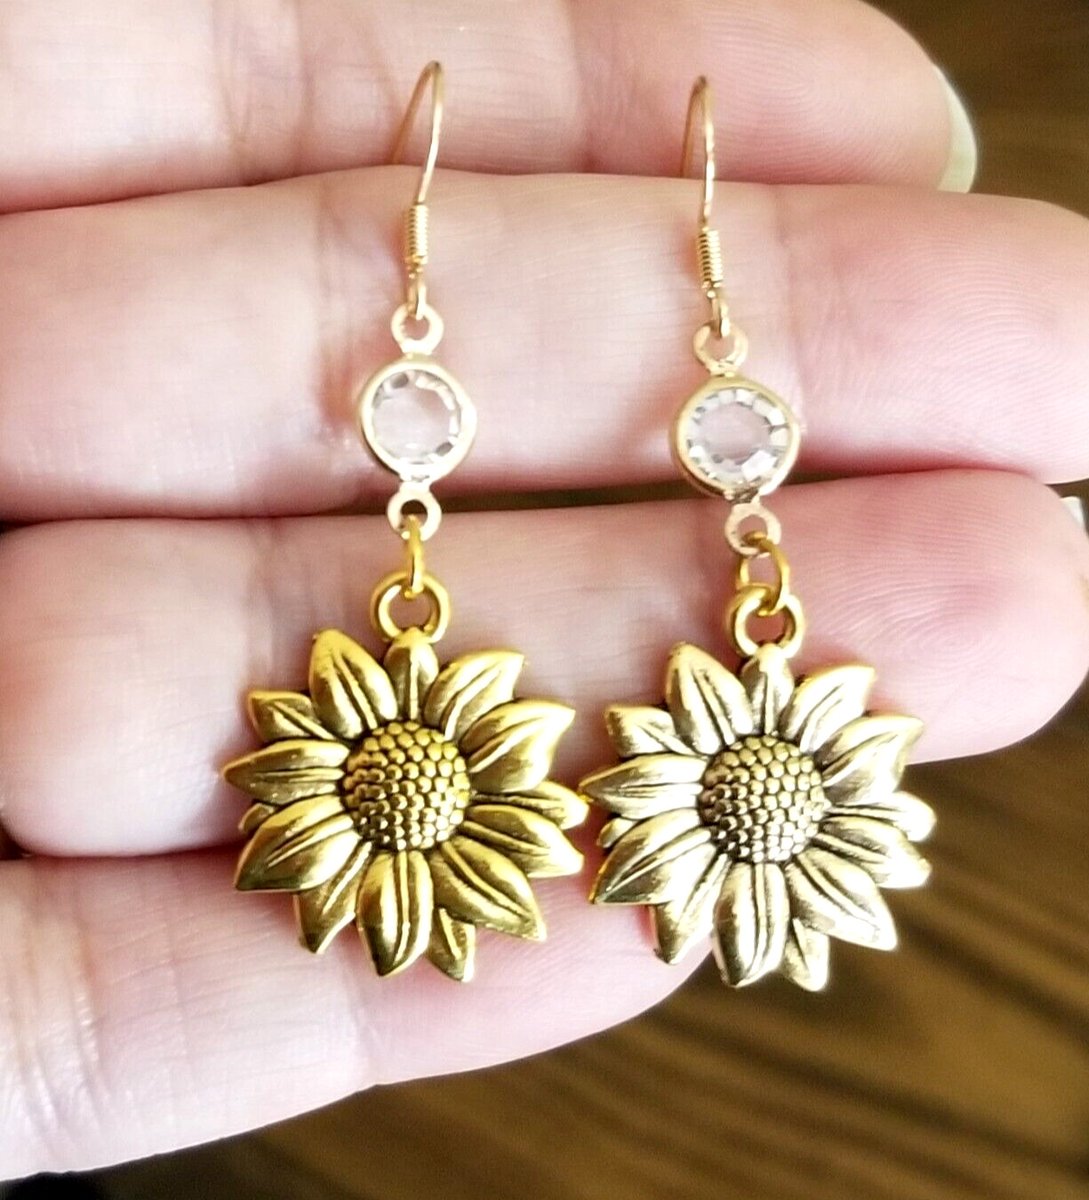 14k Gold Sunflower Earrings Sunflower Jewelry Dangle Sunflowers Mothers Day Gift #springtrends #Mothersday #Mothersdaygifts #Prom #Graduation #graduationgifts 
ebay.com/itm/2758166086… #eBay via @eBay